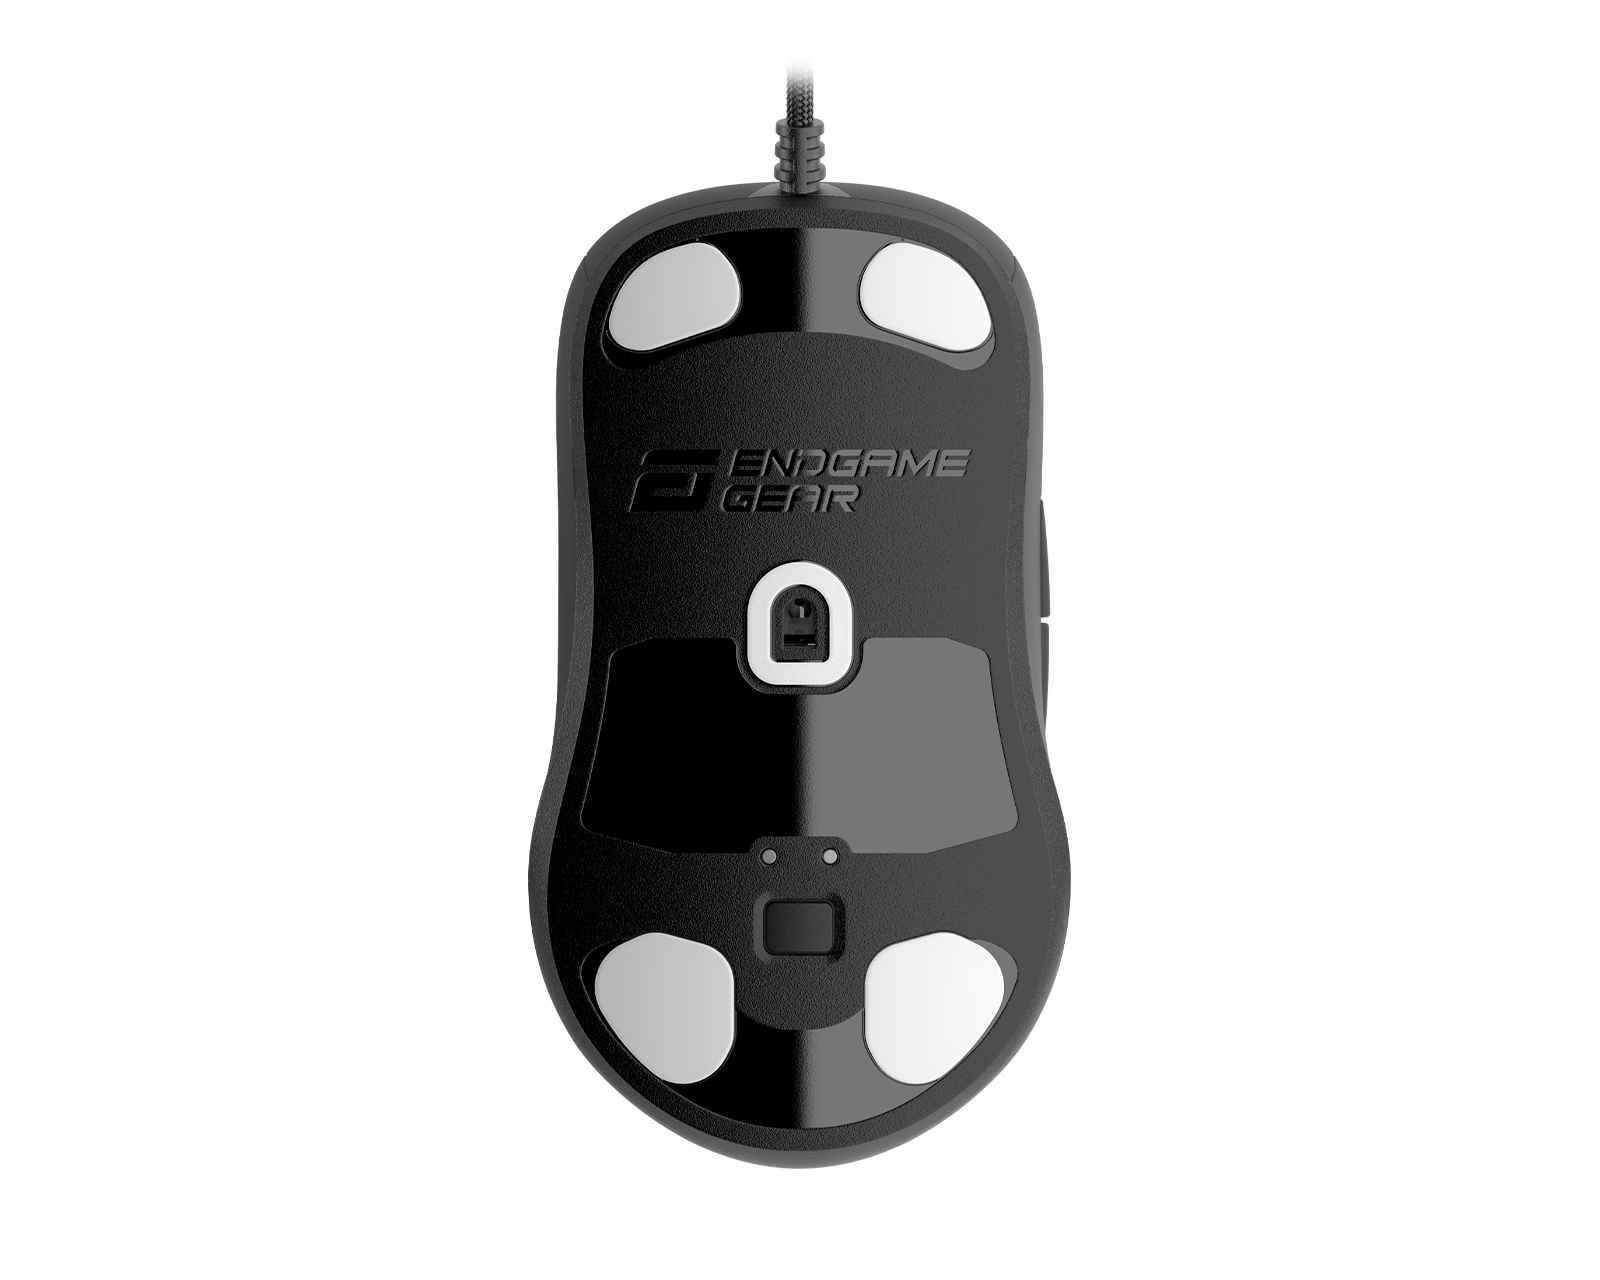 Buy Endgame Gear Xm1r Gaming Mouse Black At Maxgaming Com